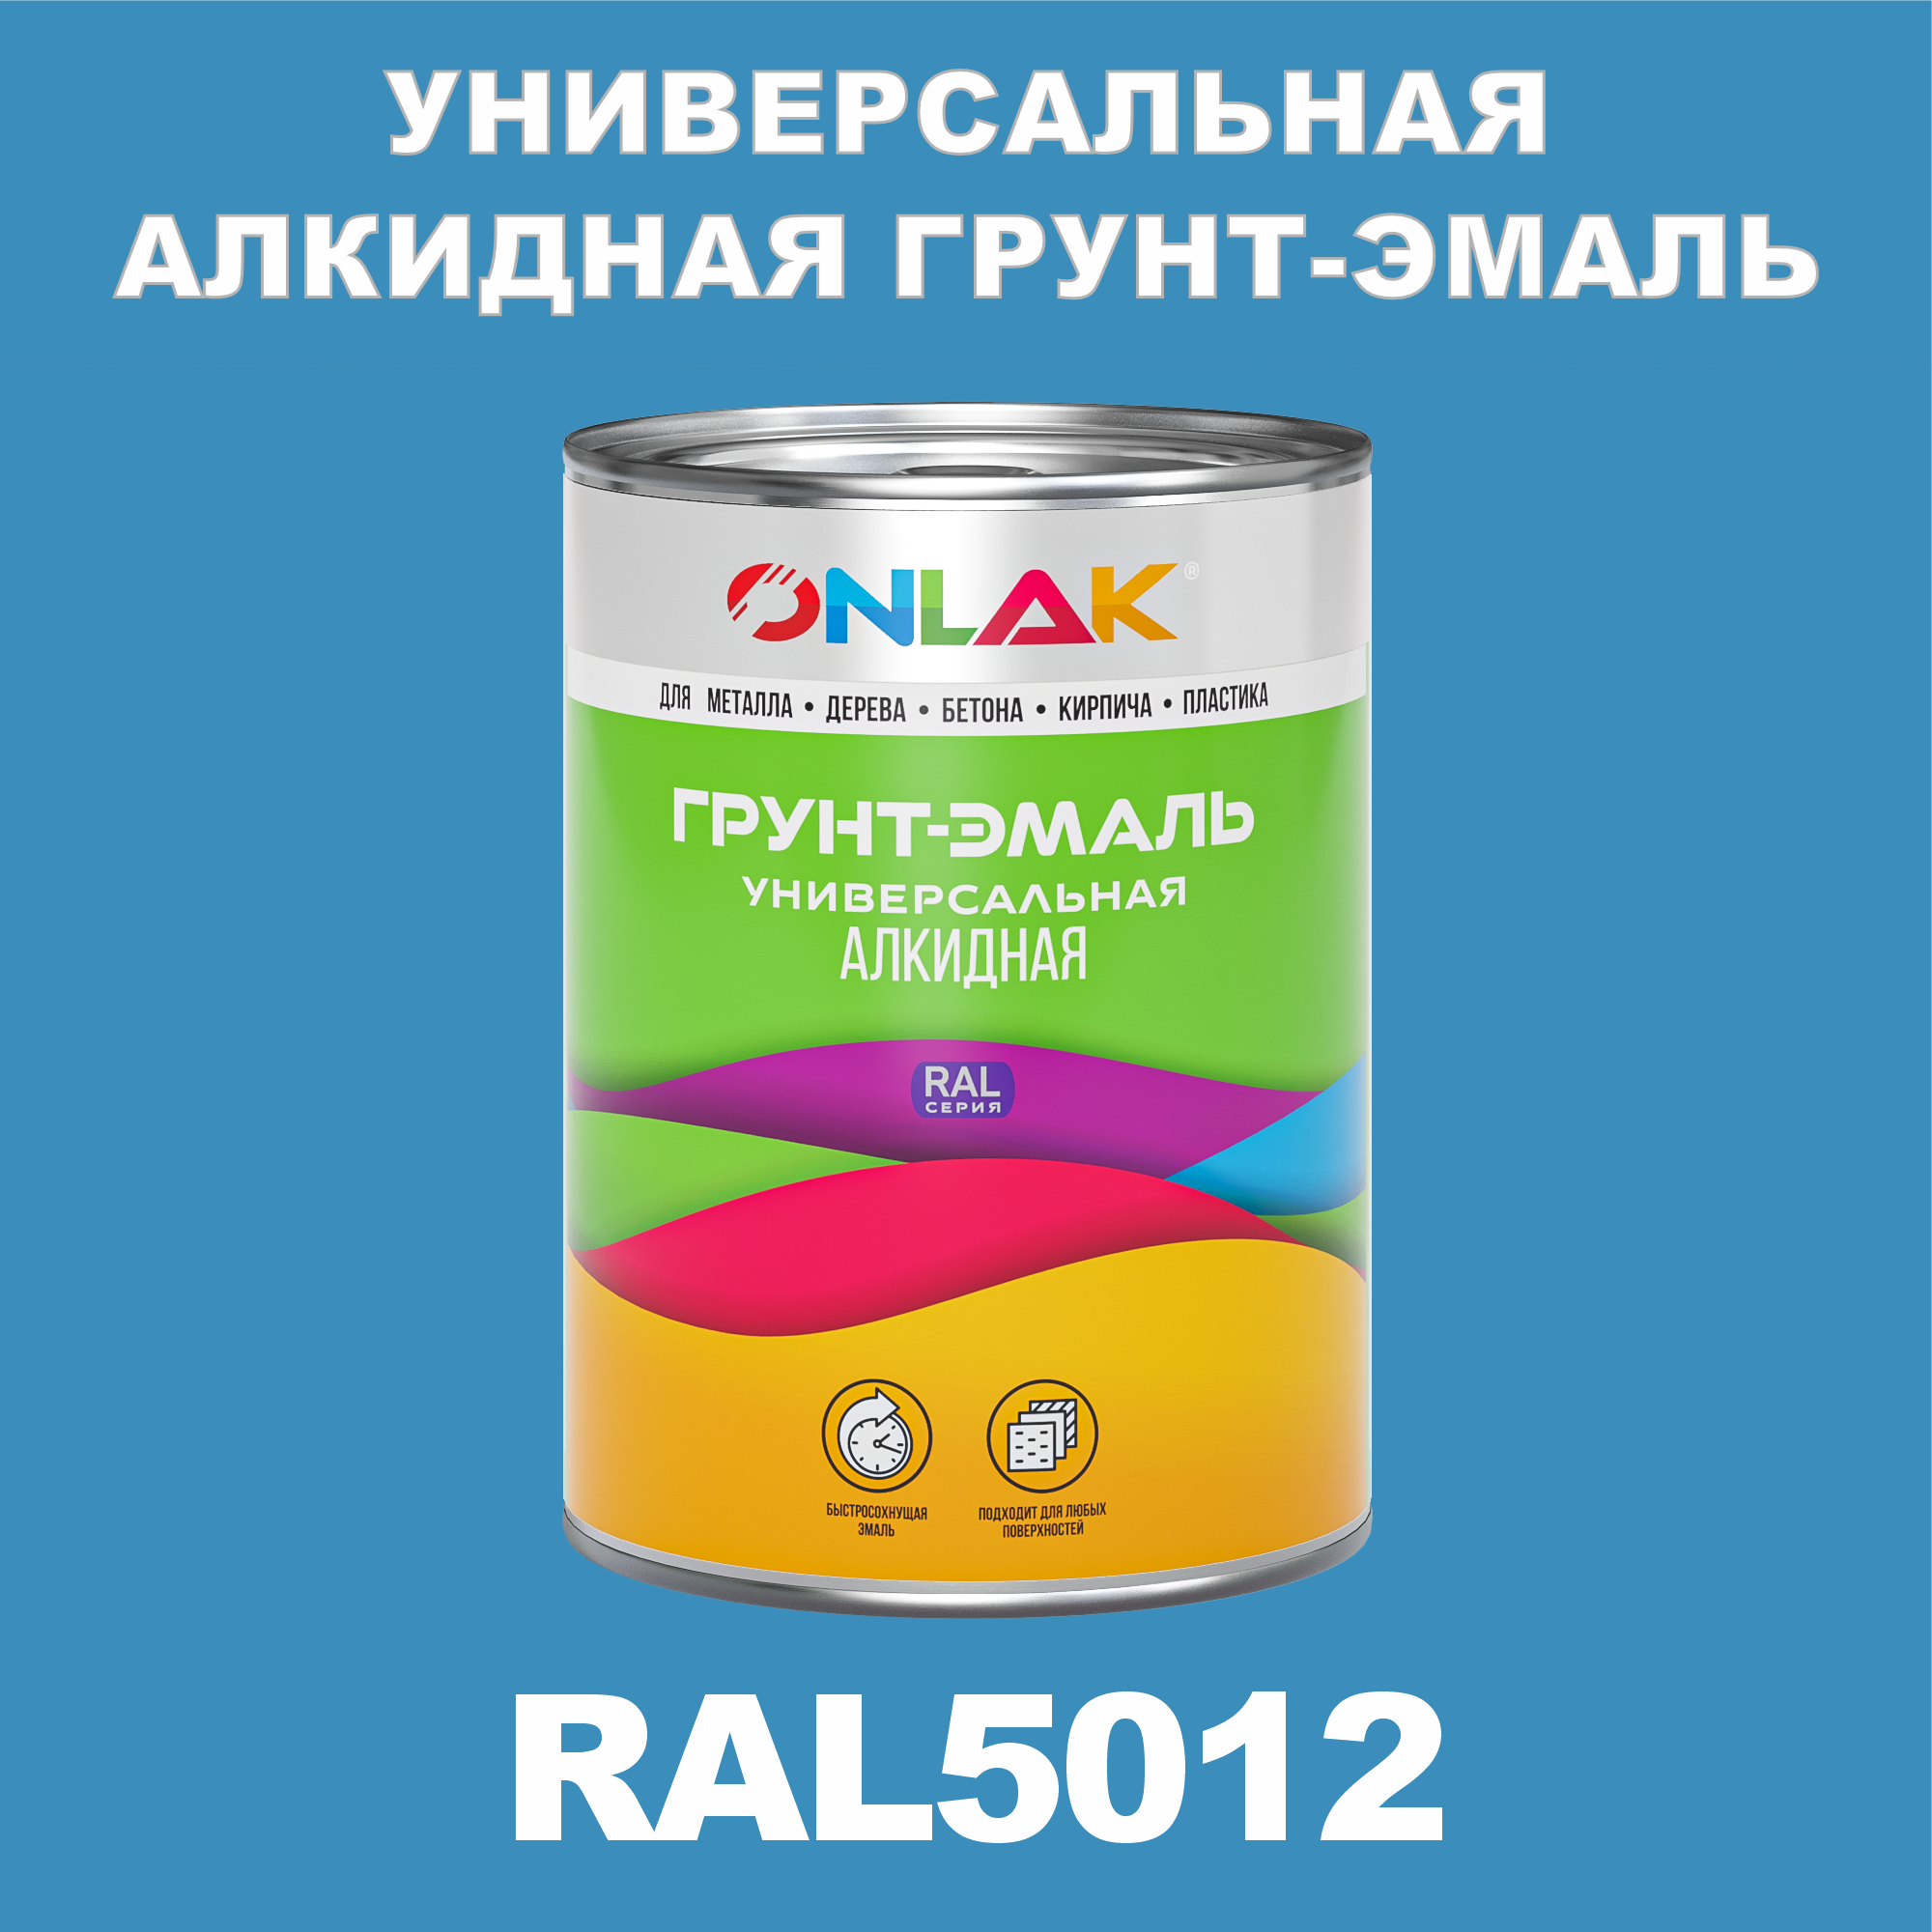 Грунт-эмаль ONLAK 1К RAL5012 антикоррозионная алкидная по металлу по ржавчине 1 кг грунт для масла mighty oak